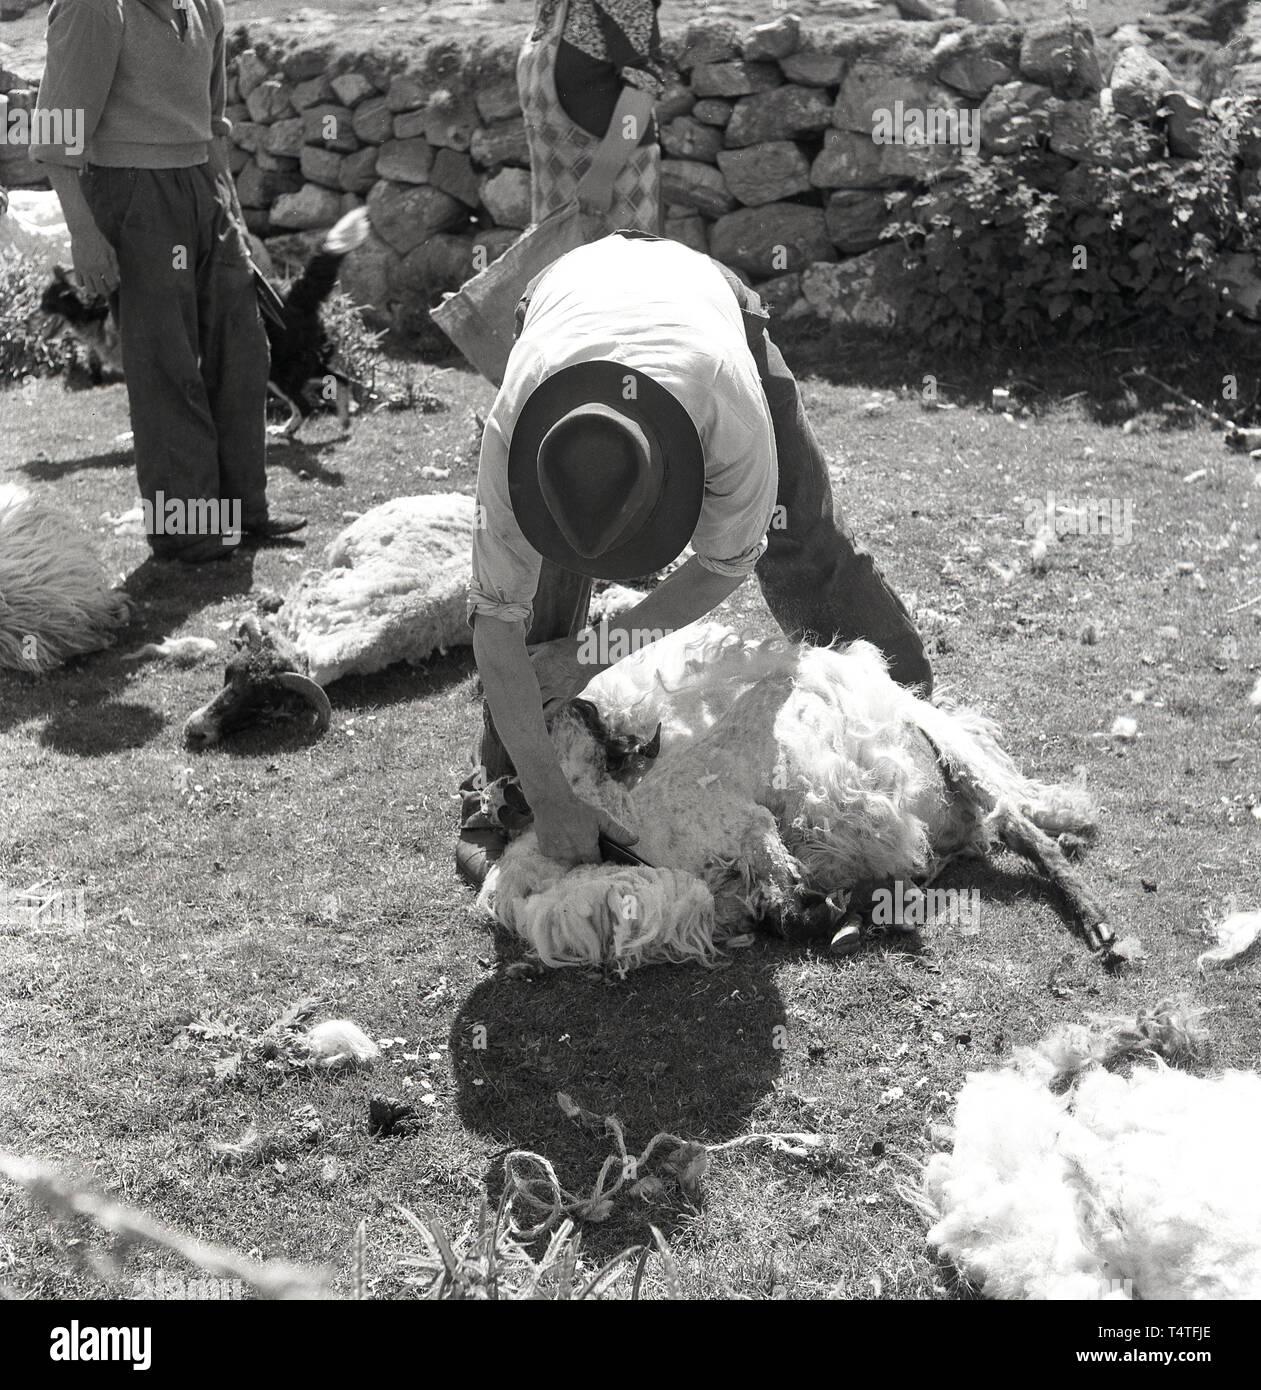 Anni sessanta, storico, tosatura pecore, in un enclosure stoneall. un agricoltore o shearer utilizzando un paio di forbici o cesoie a lama per agganciare la lana off una pecora, Inghilterra, Regno Unito. Foto Stock